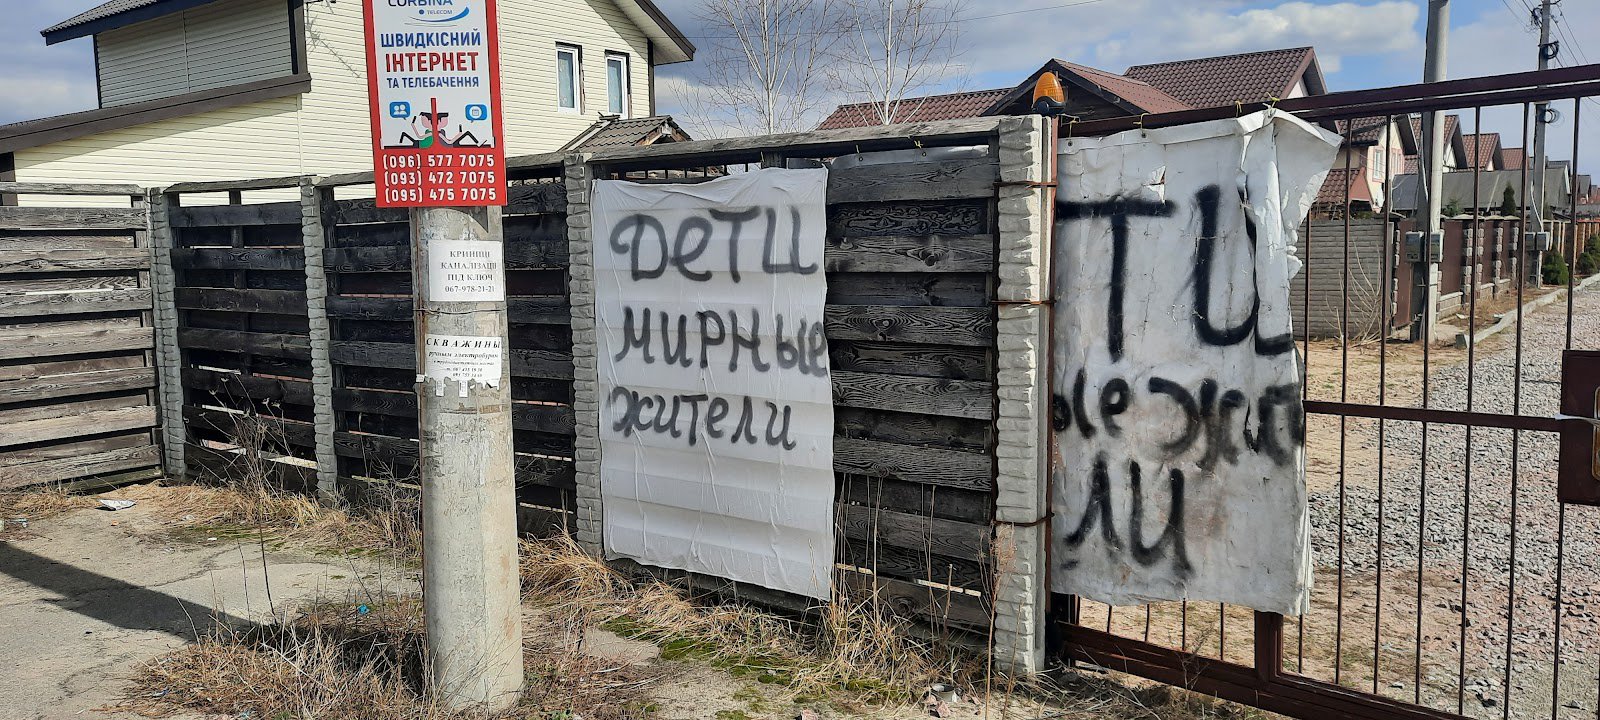 На воротах котеджного містечка був напис із попередженням, що тут цивільні та діти, але росіян це не зупинило